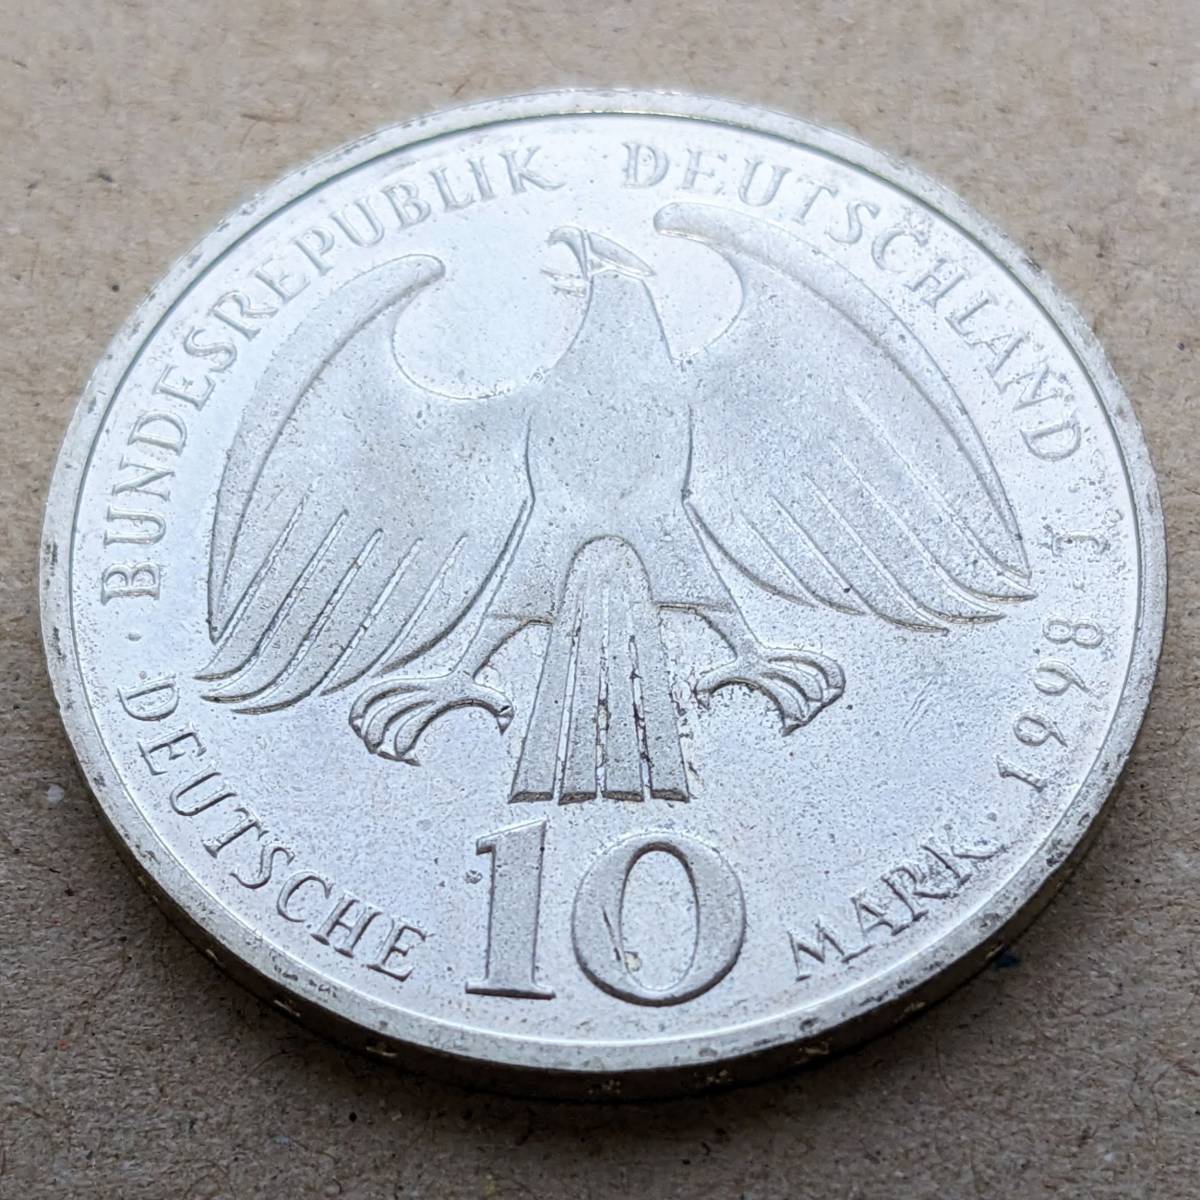 1998年 西ドイツ 三十年戦争終結300周年記念 10マルク 銀貨 UNC ハンブルクミント_画像4